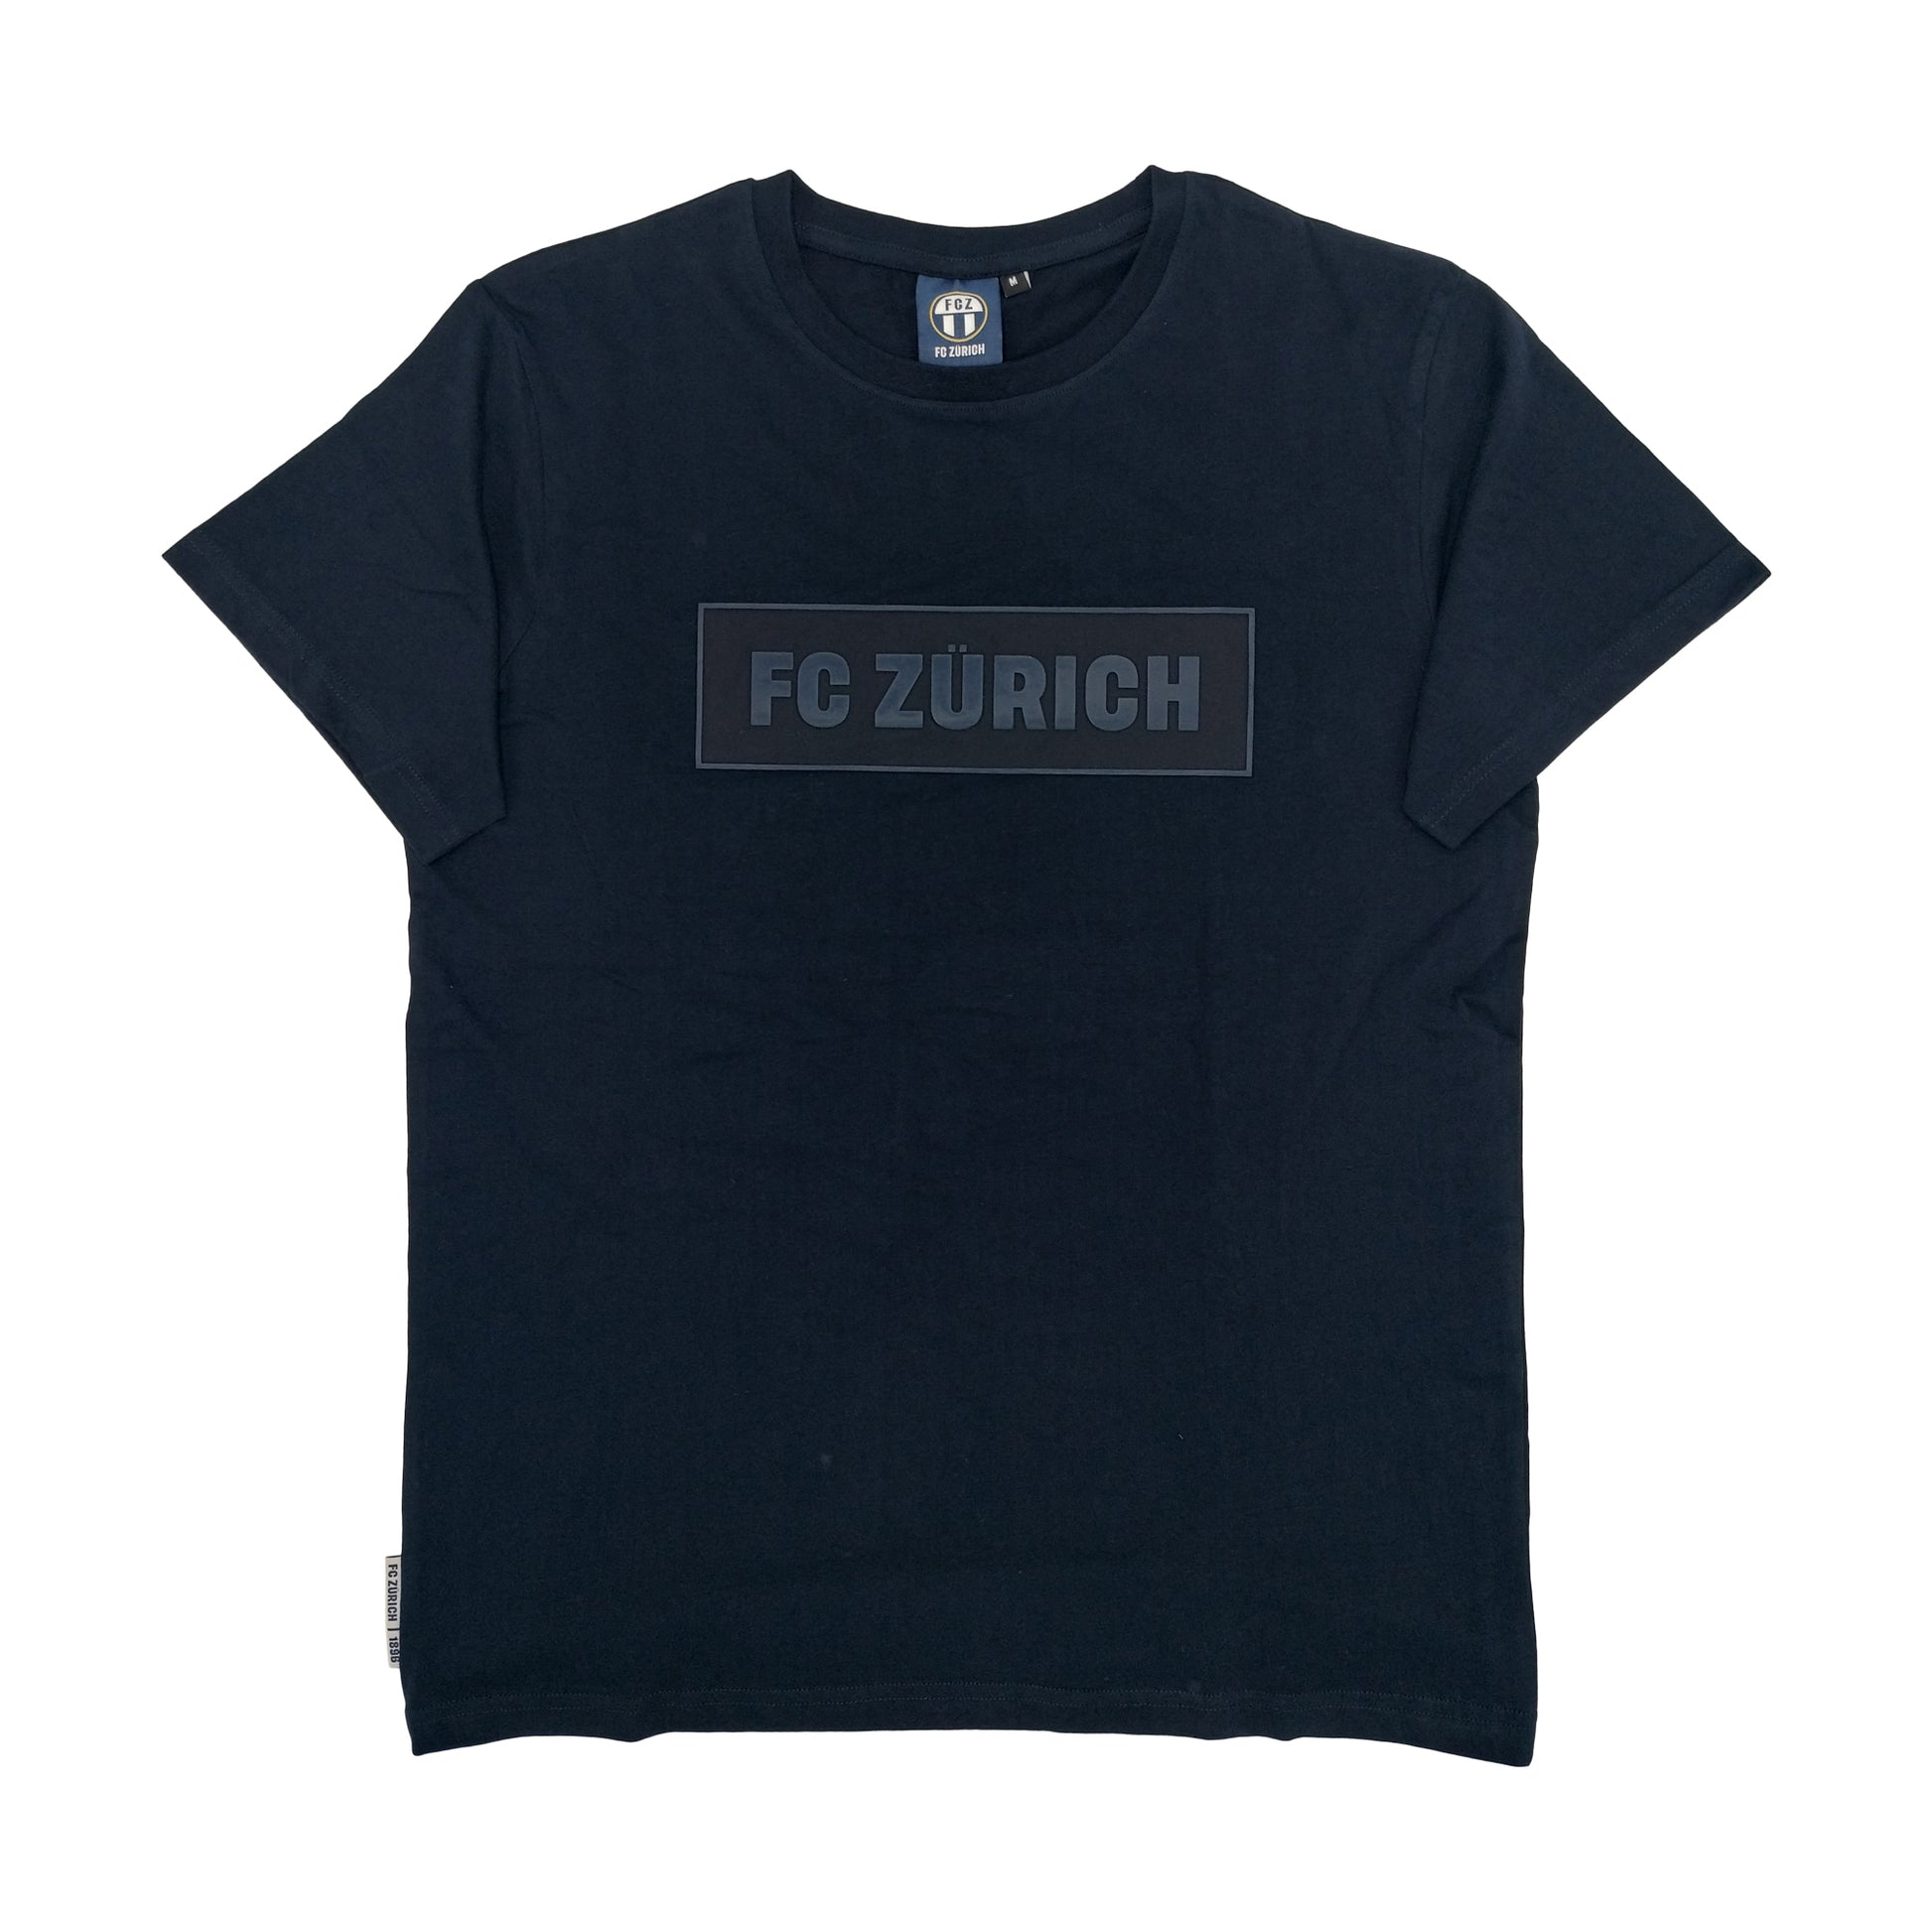 Shirt FC Zürich Navy Kids